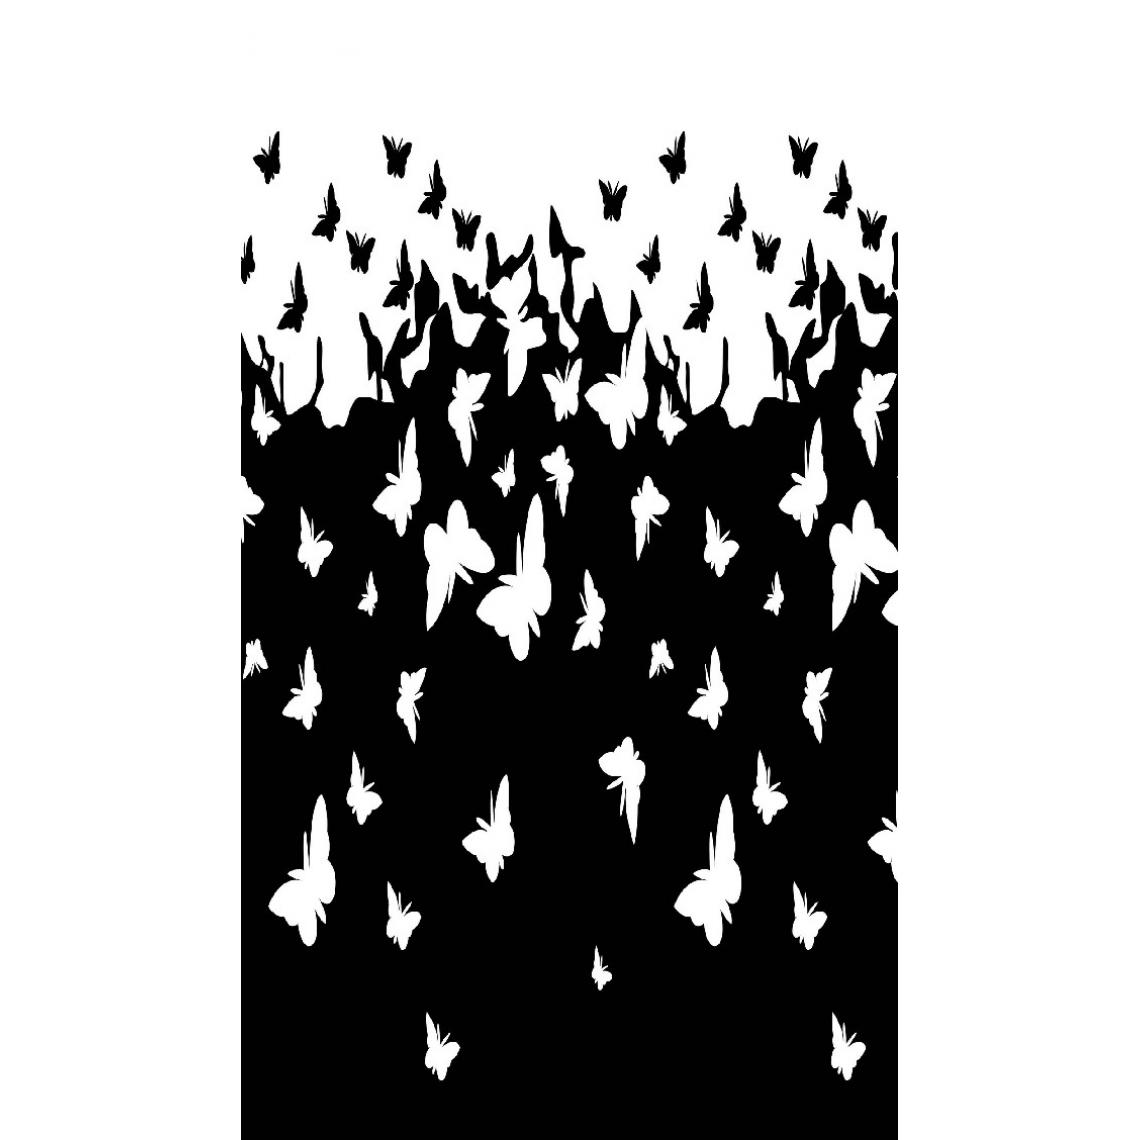 Homemania - HOMEMANIA Tapis Imprimé Butterflies 1 - Animaux - Décoration de Maison - Antidérapant - Pour Salon, séjour, chambre à coucher - Blanc, Noir en Polyester, Coton, 60 x 100 cm - Tapis